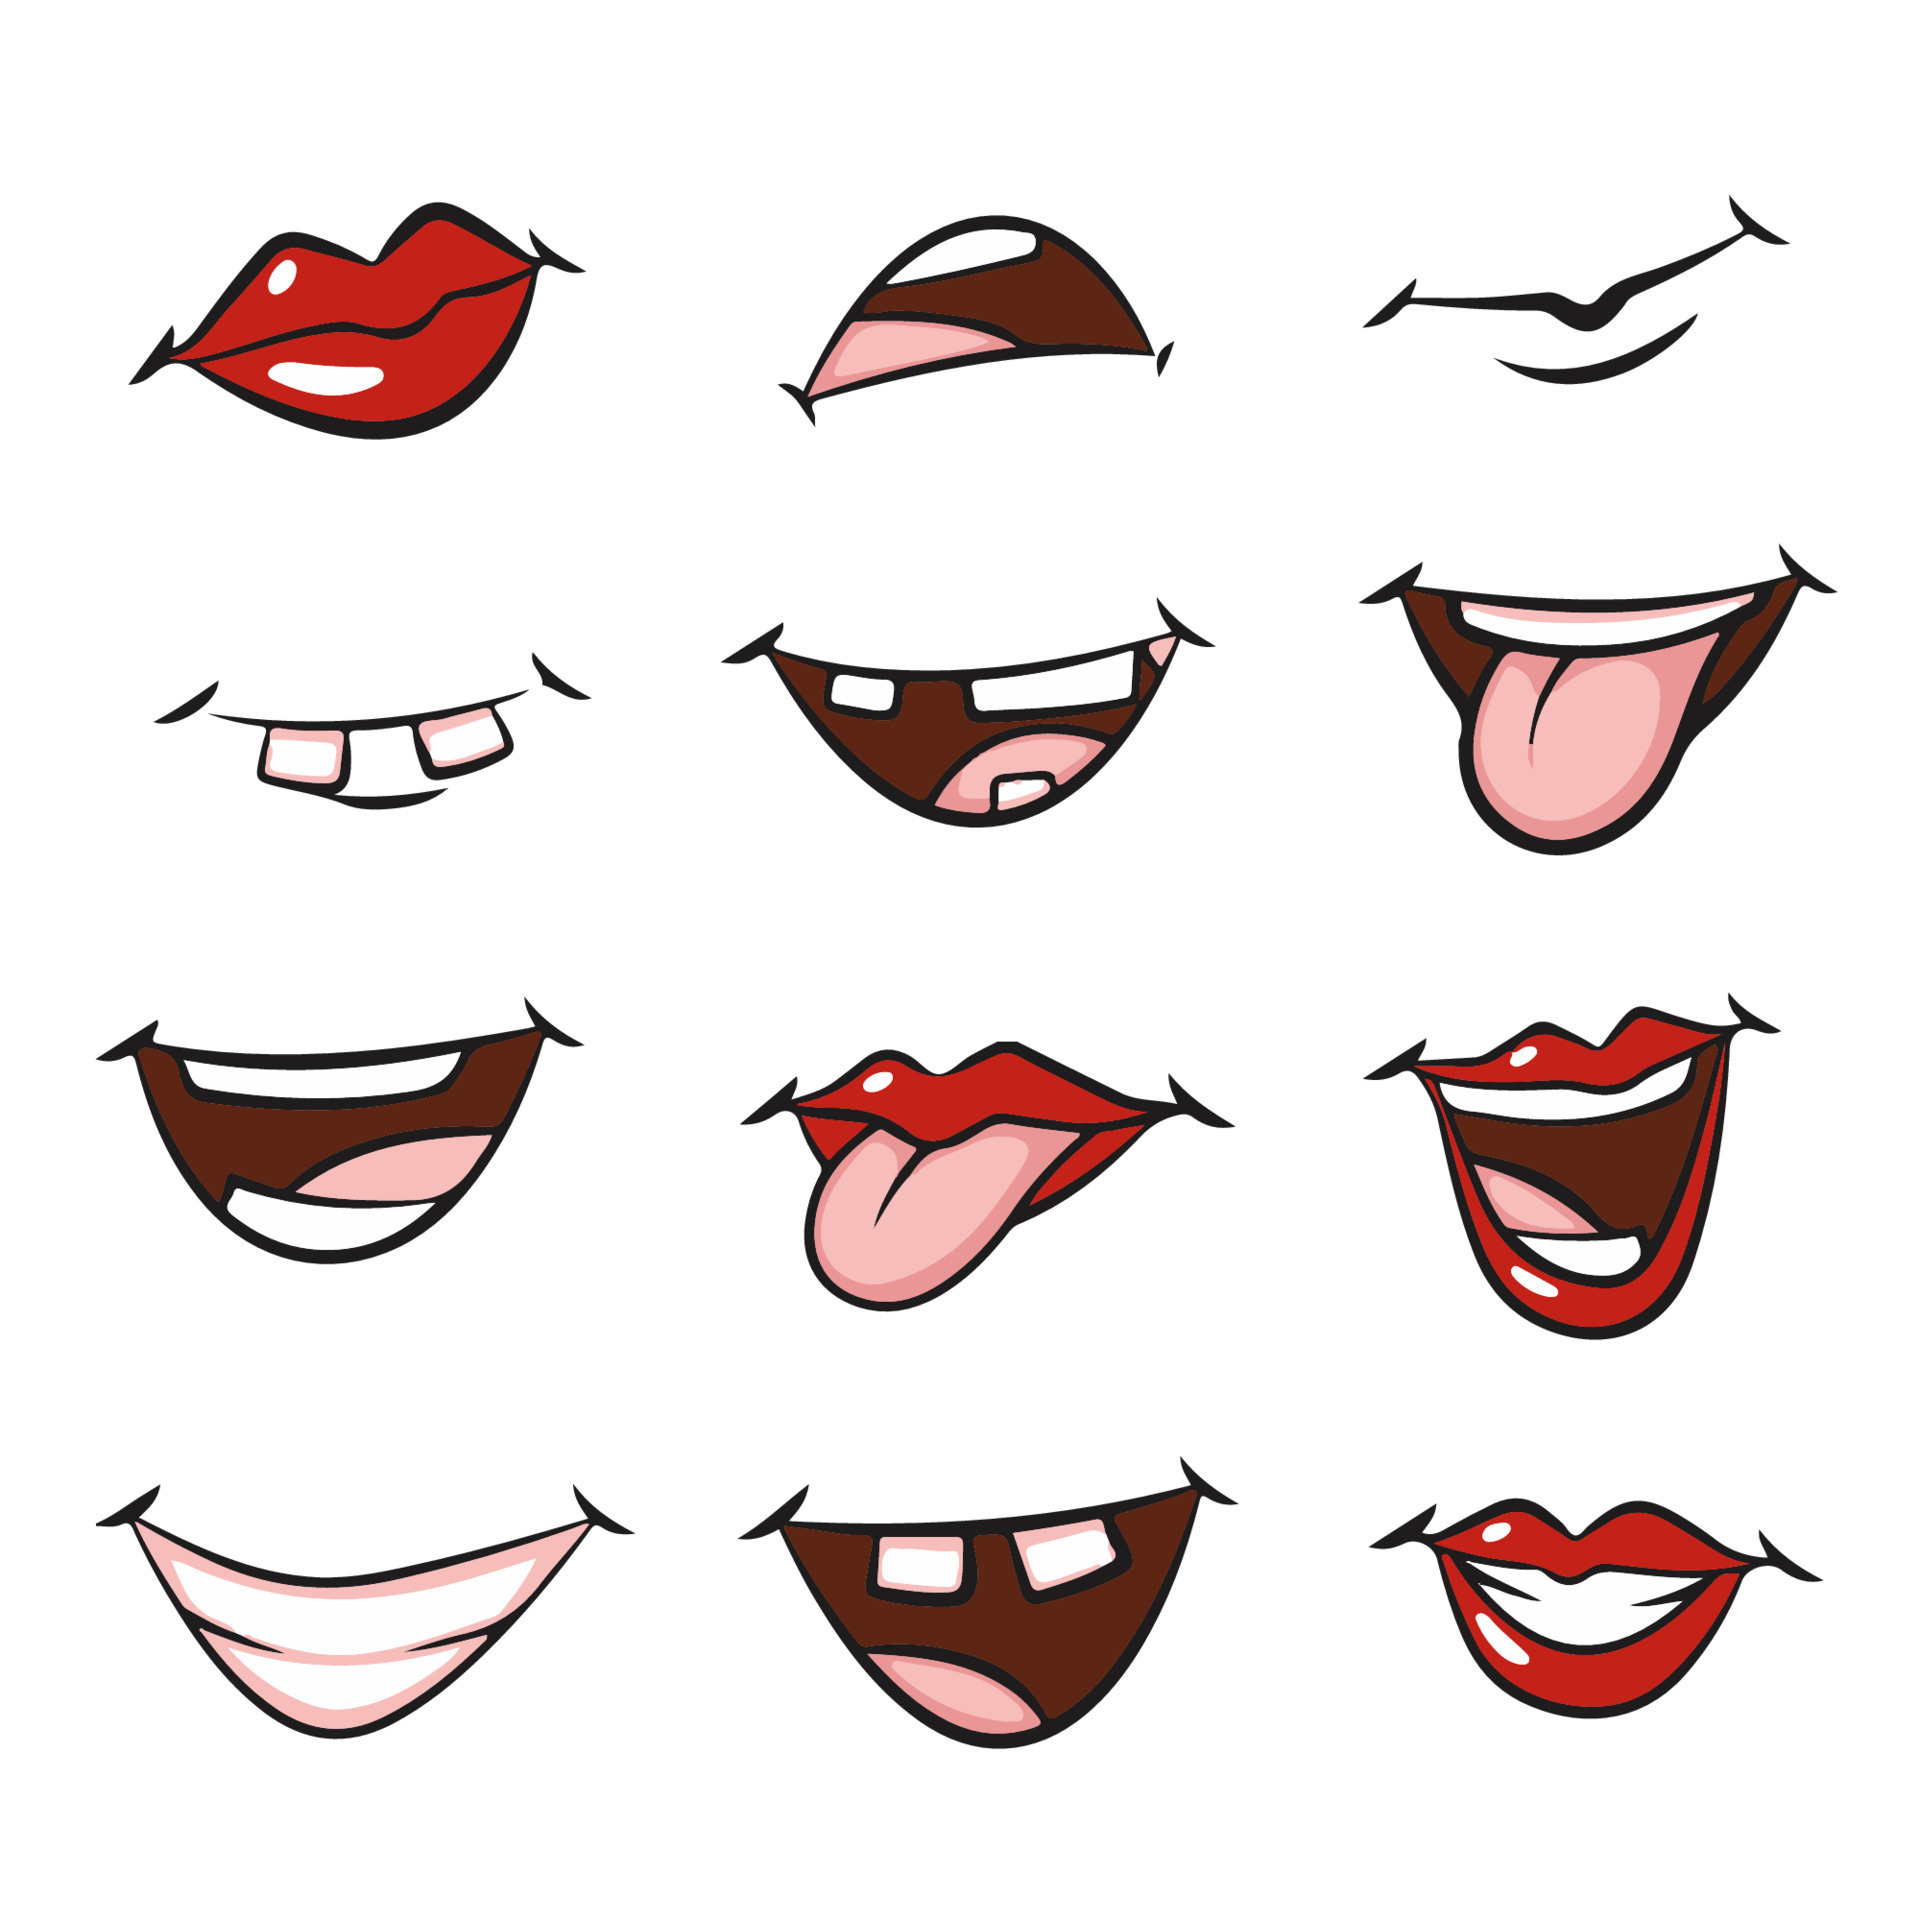 Desenho animado conjunto de sorriso boca lábios com - Stockphoto #23011359